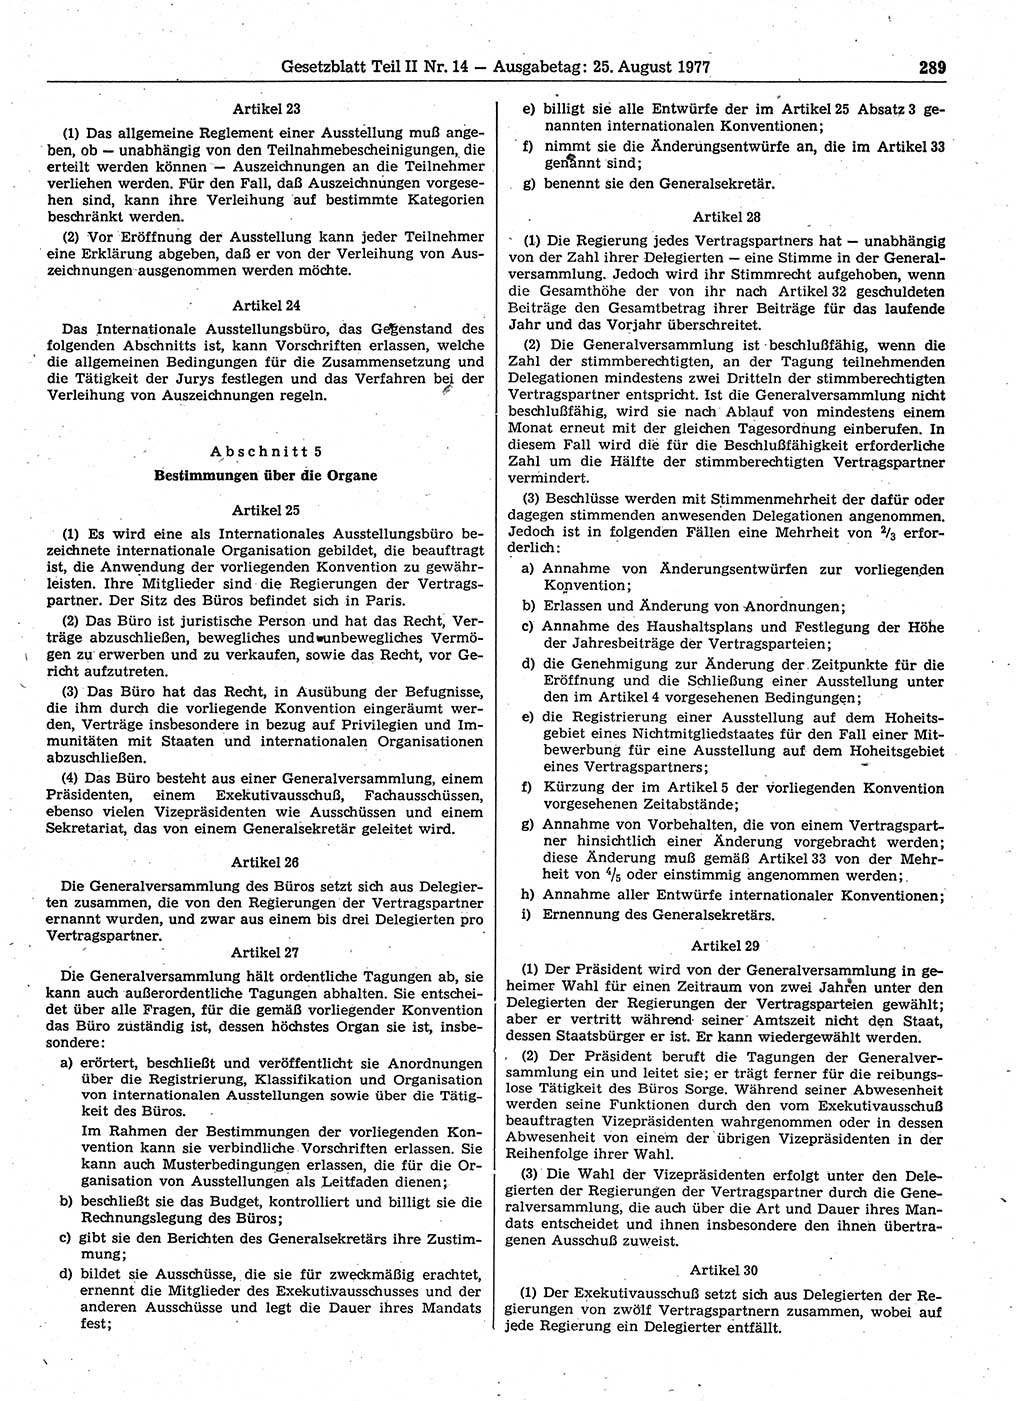 Gesetzblatt (GBl.) der Deutschen Demokratischen Republik (DDR) Teil ⅠⅠ 1977, Seite 289 (GBl. DDR ⅠⅠ 1977, S. 289)